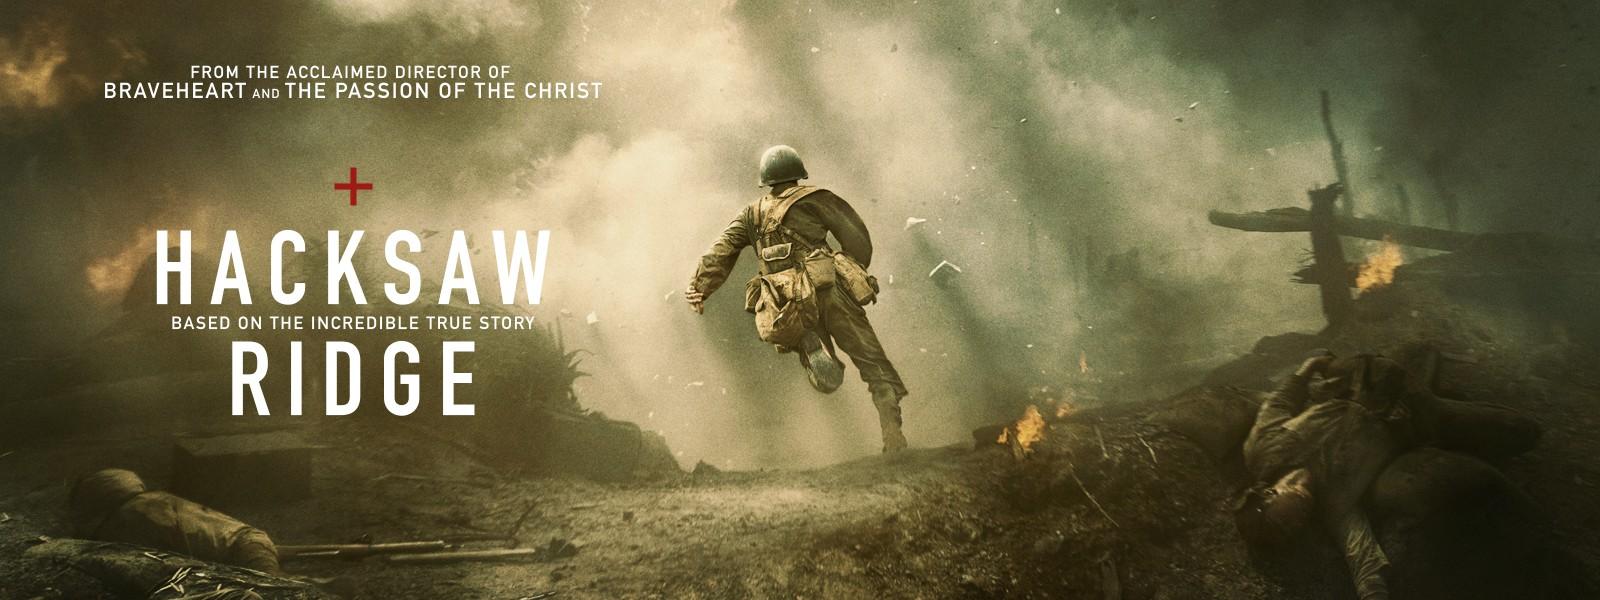 6 Film bertema perang ini punya sinematografi yang realistik